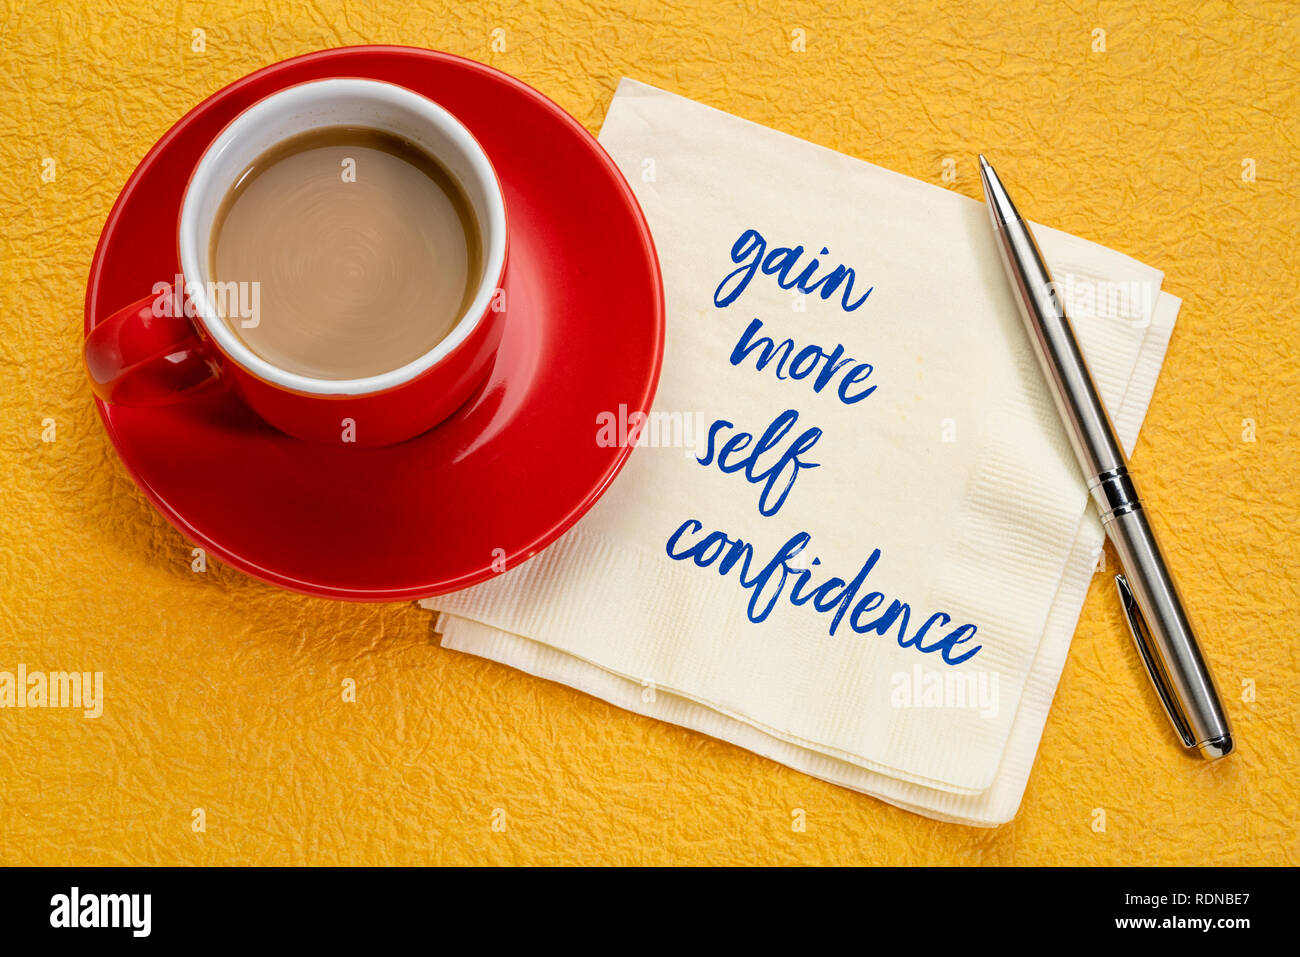 Acquisire più fiducia in sé - scrittura su un tovagliolo con una tazza di caffè Foto Stock